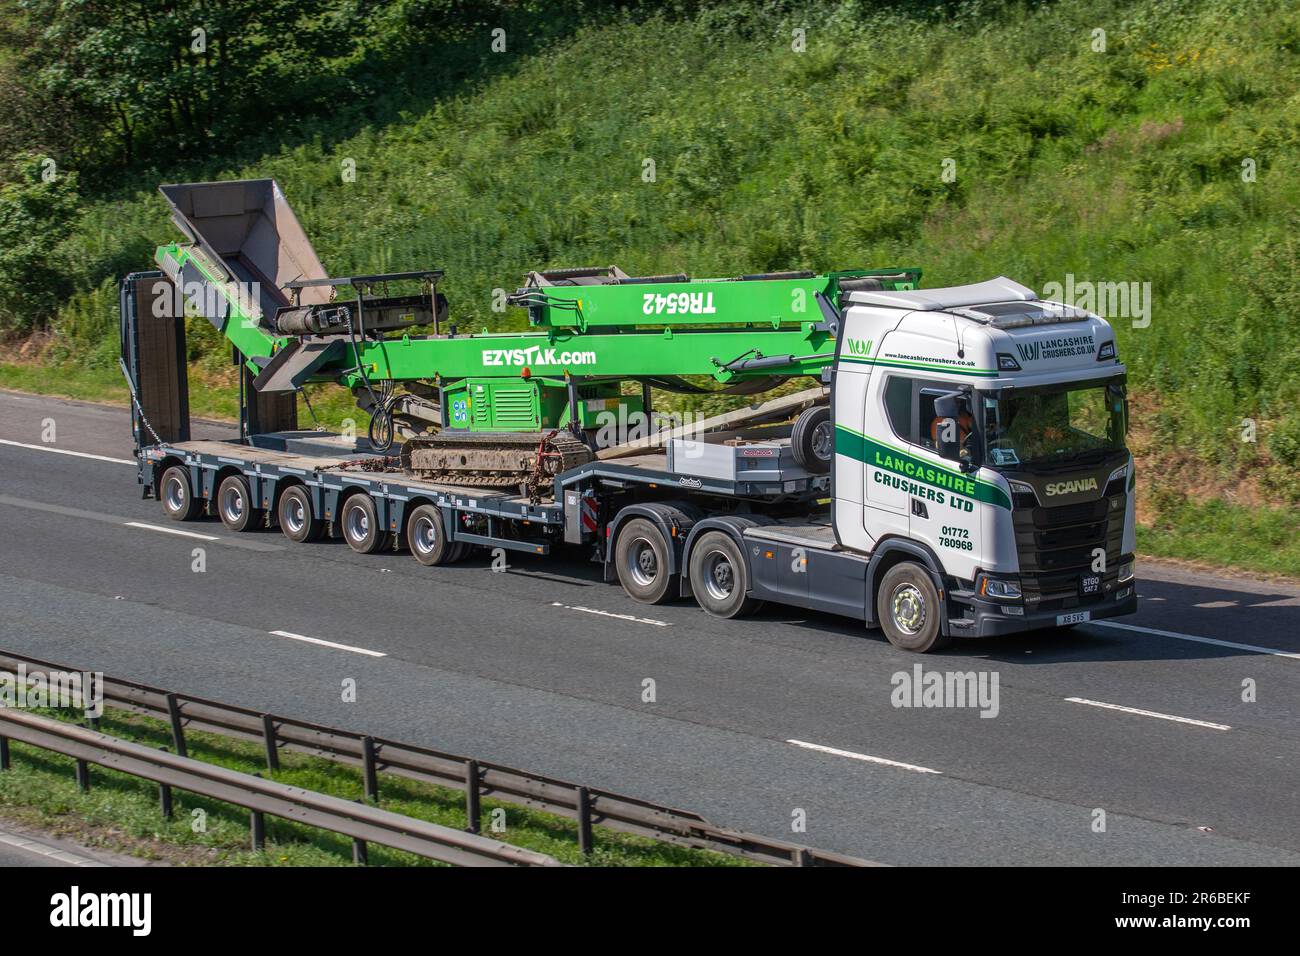 EZYSTAK.com, Ezystak Conveyors wird von LANCASHIRE CRUSHERS Ltd. SCANIA HGV auf der Autobahn M61 UK auf Nooteboom Tieflader transportiert Stockfoto